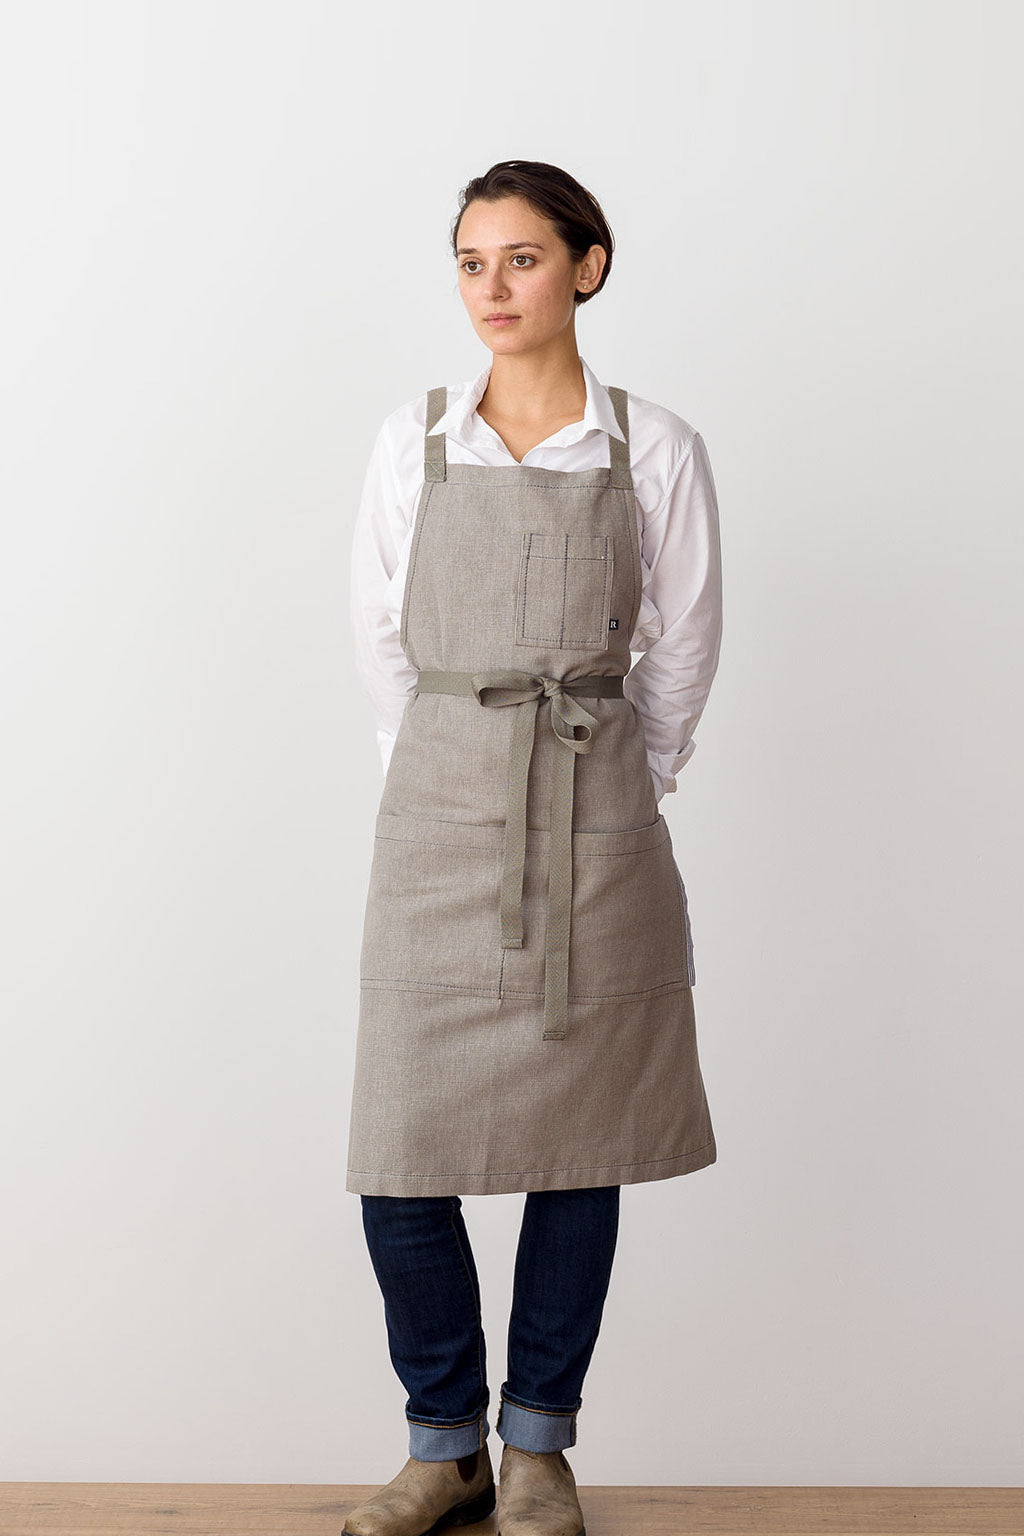 outfmvch kitchen gadgets apron women cotton linen cross back apron